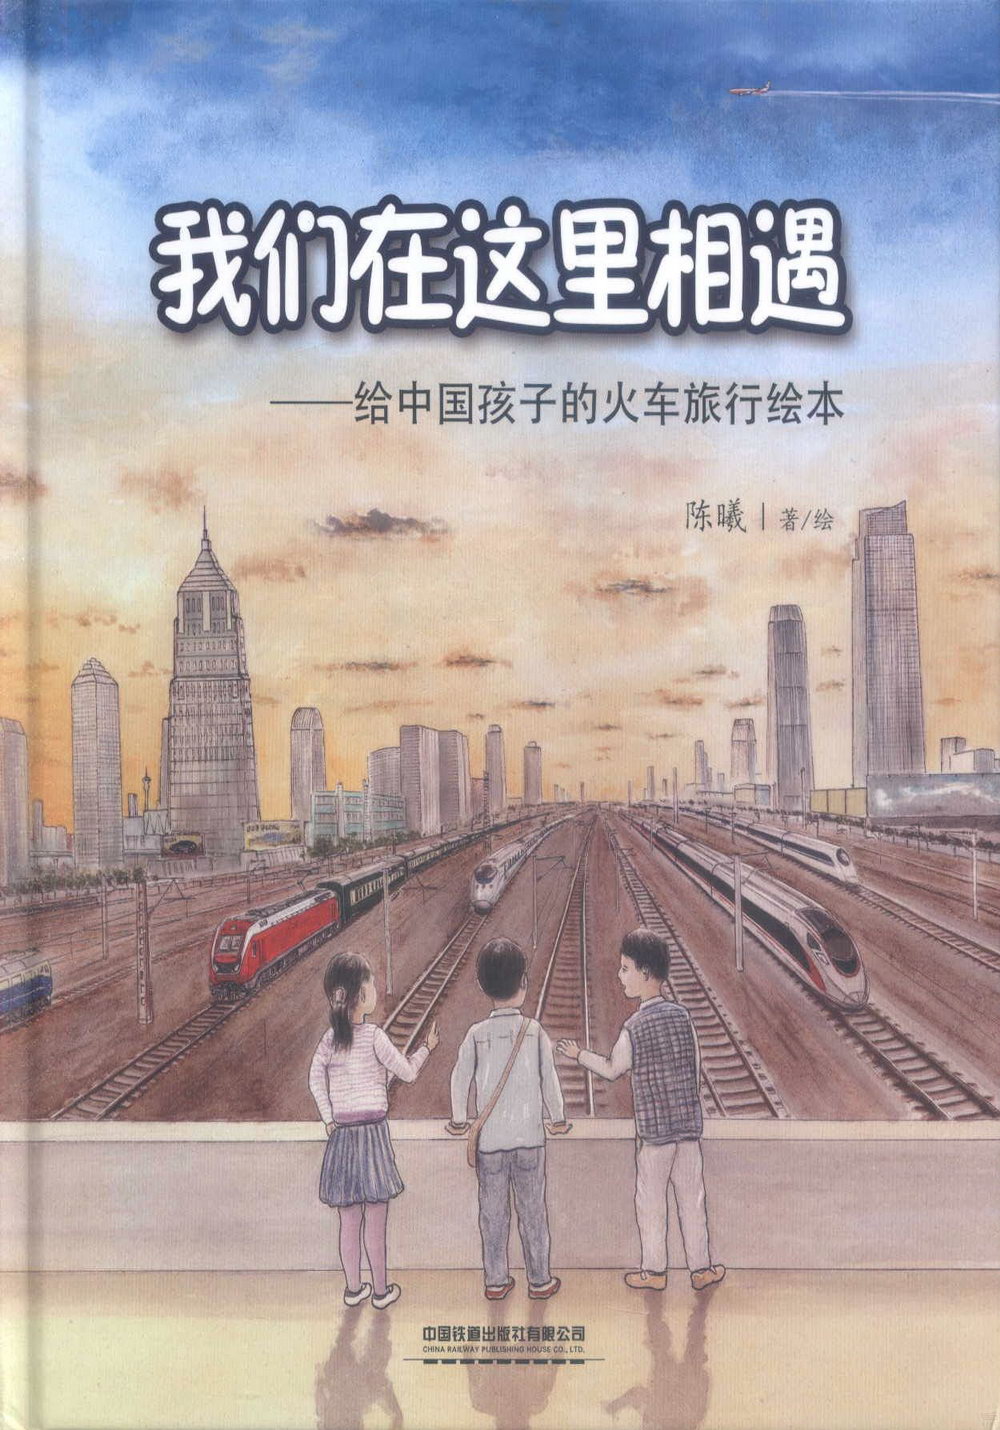 我們在這裡相遇--給中國孩子的火車旅行繪本